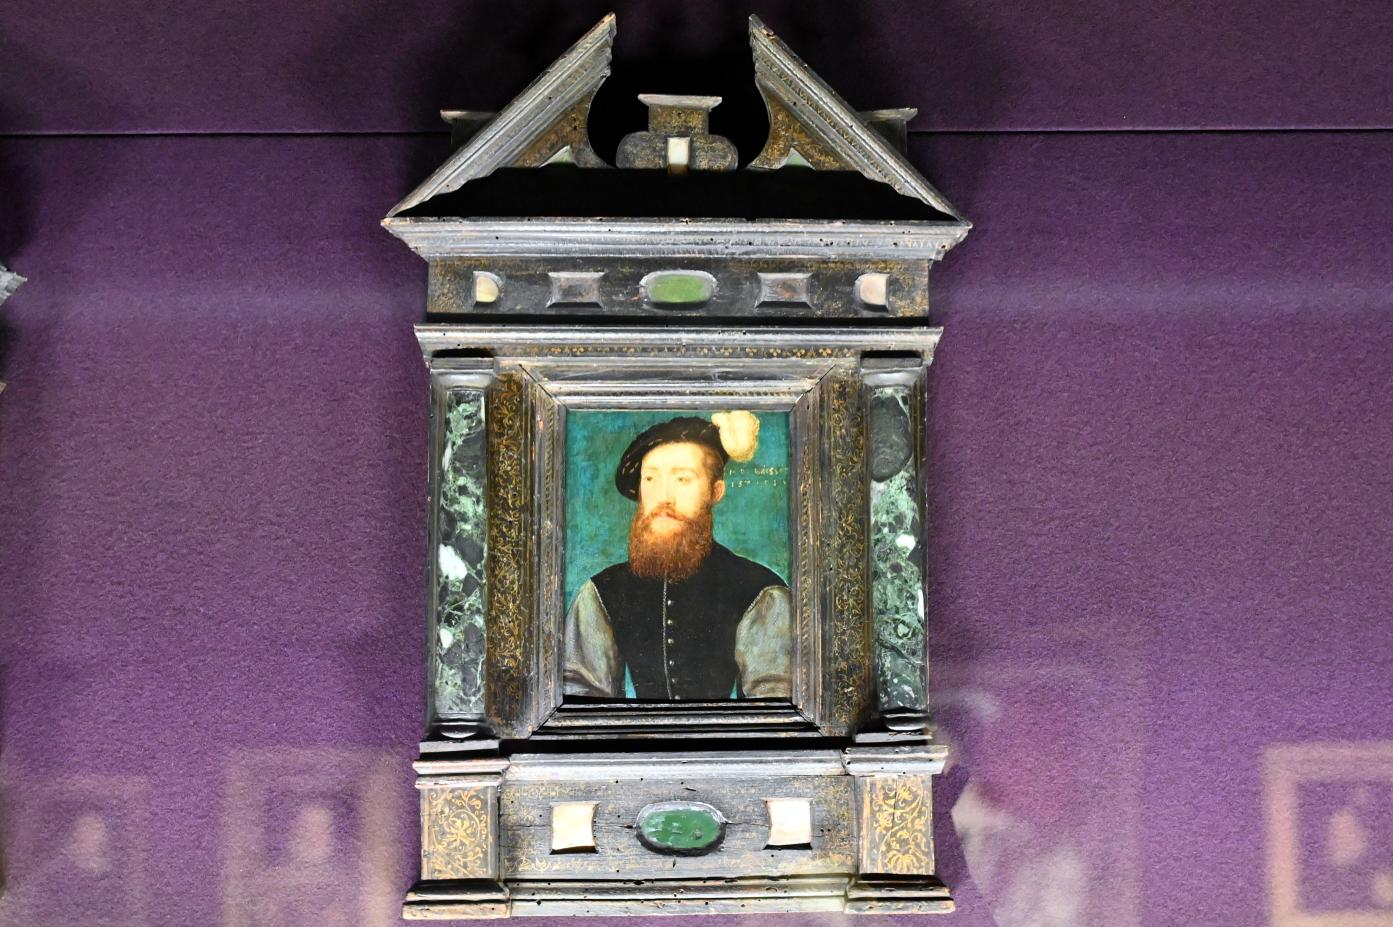 Corneille de Lyon (Werkstatt) (1536–1560), Porträt des Charles de Cossé (ca. 1506-1564), Graf von Brissae, 1550 zum Marschall von Frankreich ernannt, Paris, Musée du Louvre, Saal 822, um 1543, Bild 1/2